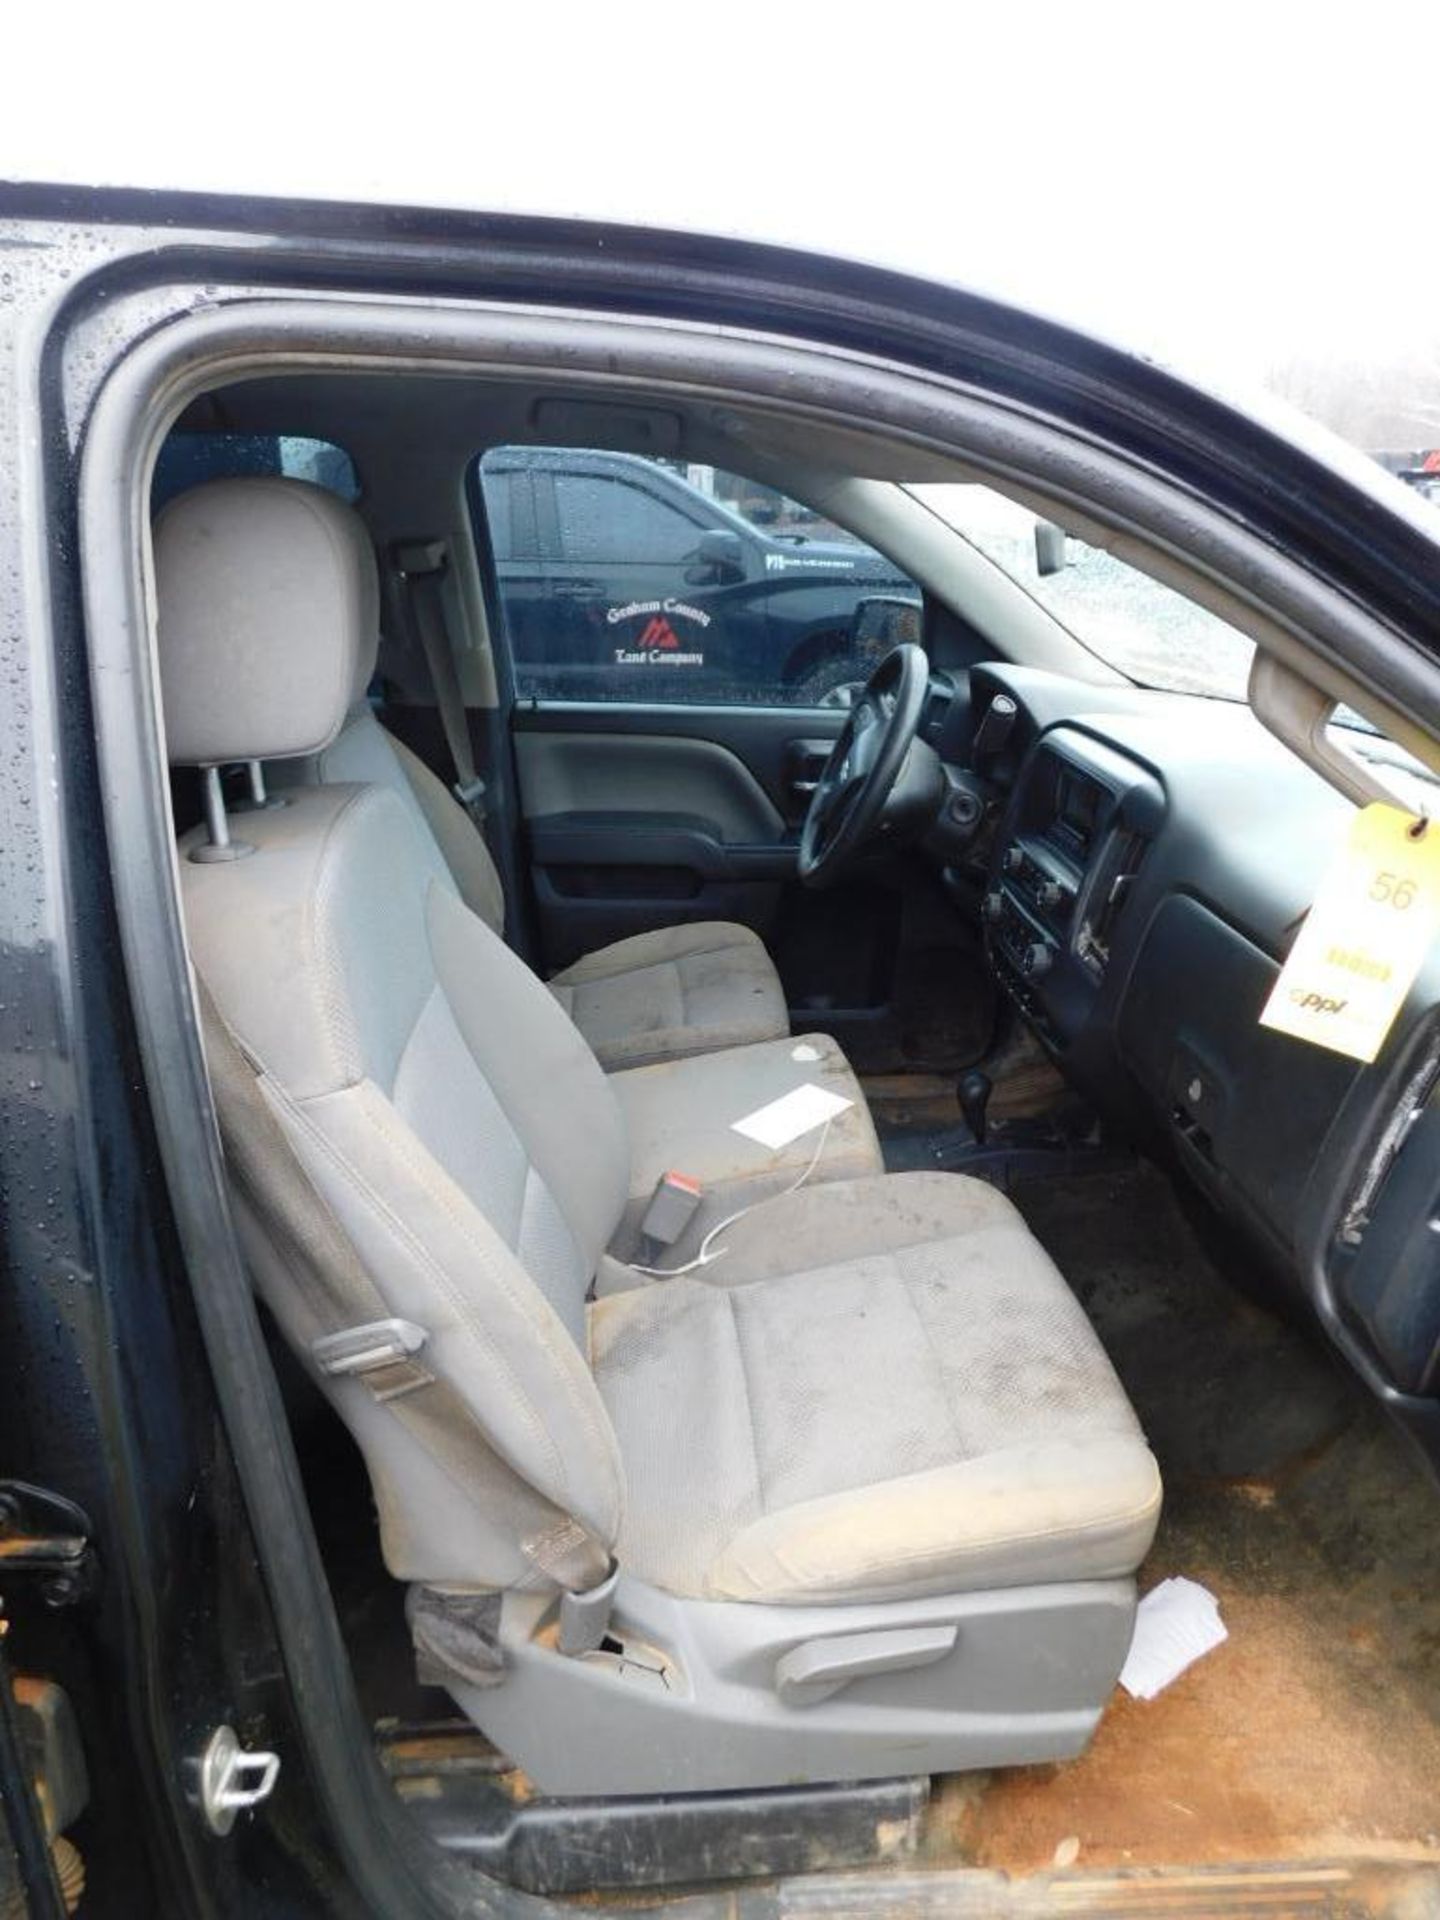 2014 Chevy Silverado 1500 Crew Cab, 4-Wheel Drive, 5.3 Liter V8 Gasoline Motor, Auto, 6'6" Bed, 269, - Image 9 of 10